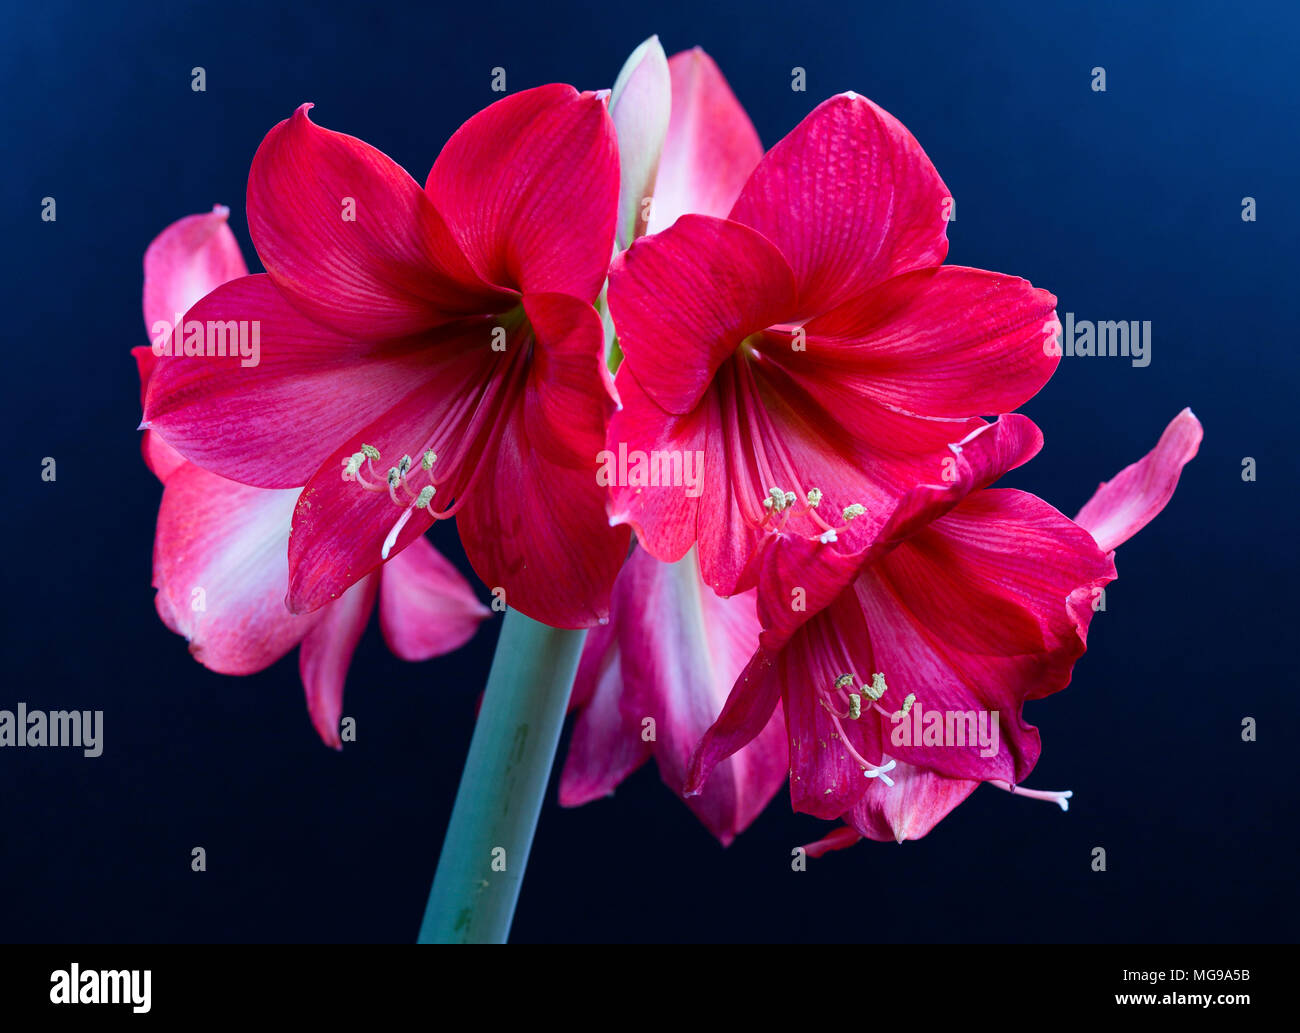 Amaryllis flowers. Stock Photo